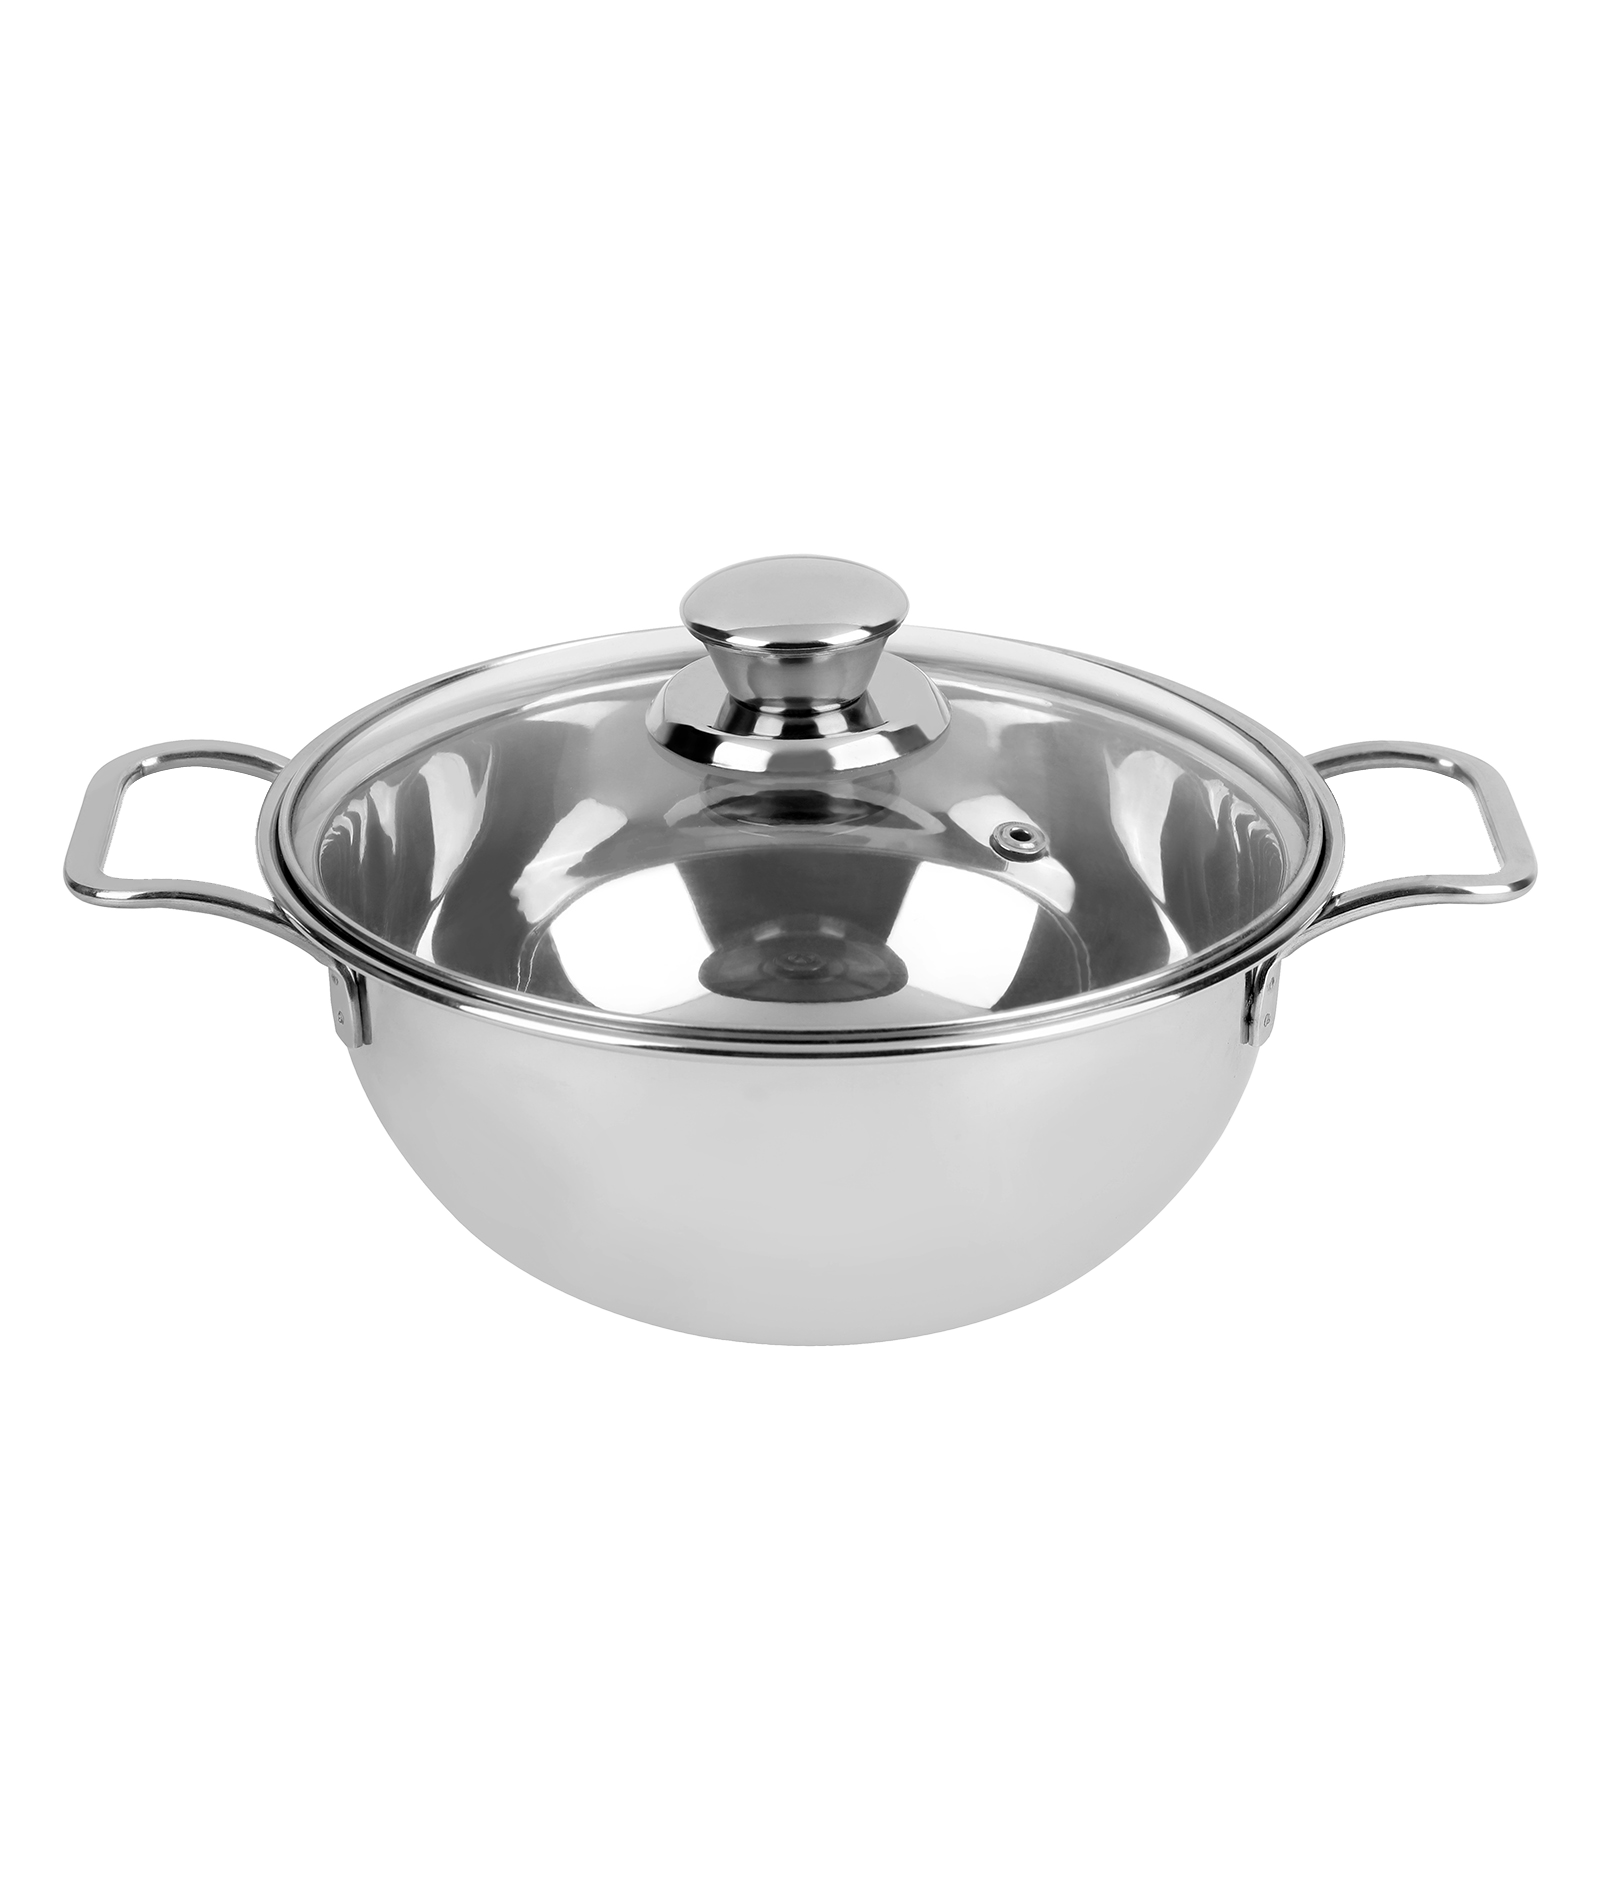 Vinod Omega Stainless Steel Serving Bowl (KSB16, Silver)_1